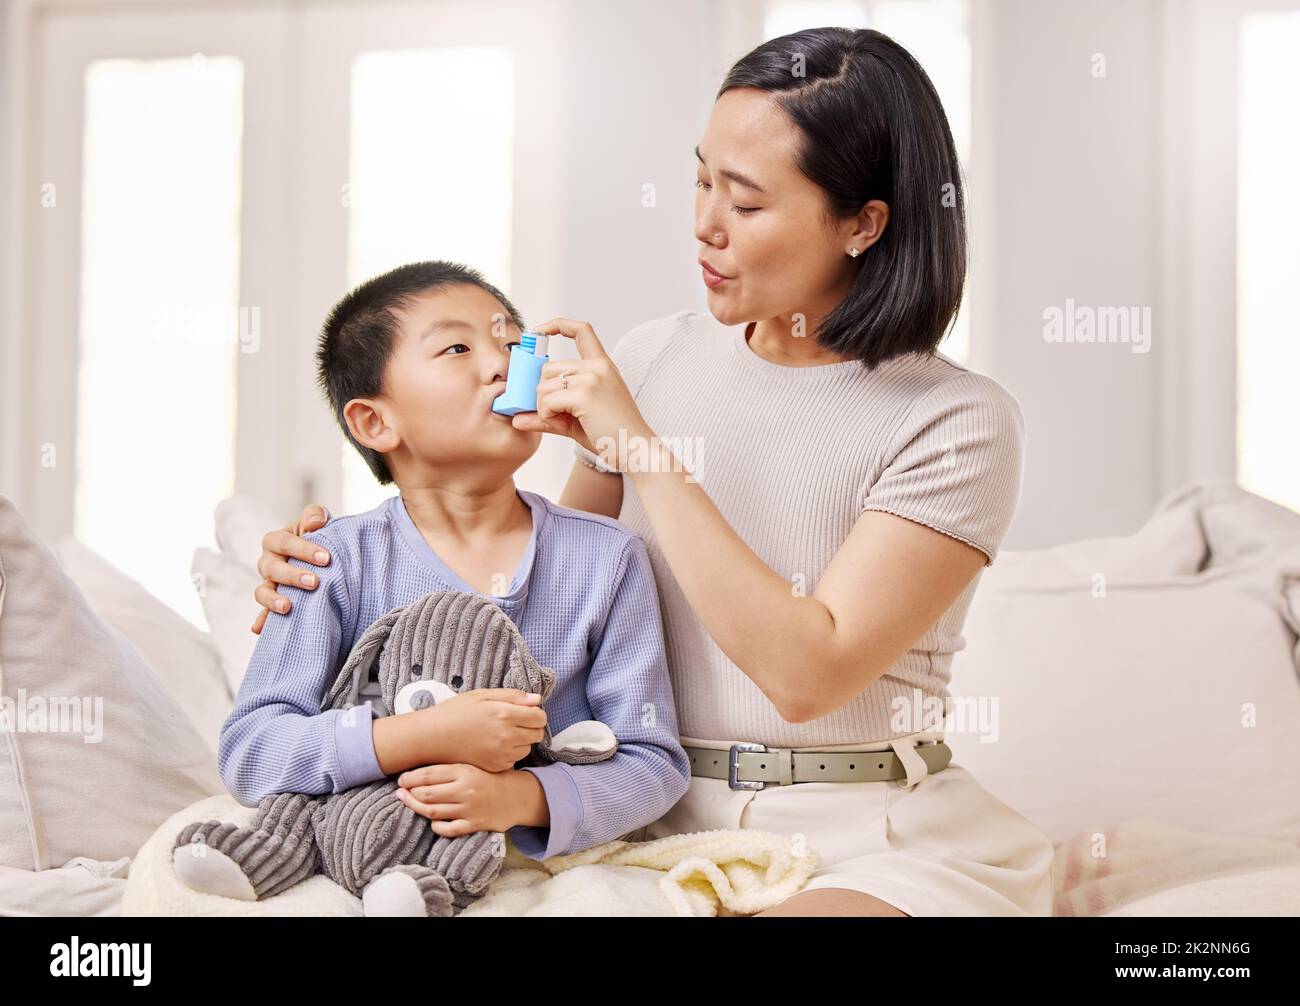 Atmen Sie langsam ein. Aufnahme einer Frau, die ihrem Sohn mit seinem Asthmainhalator half. Stockfoto